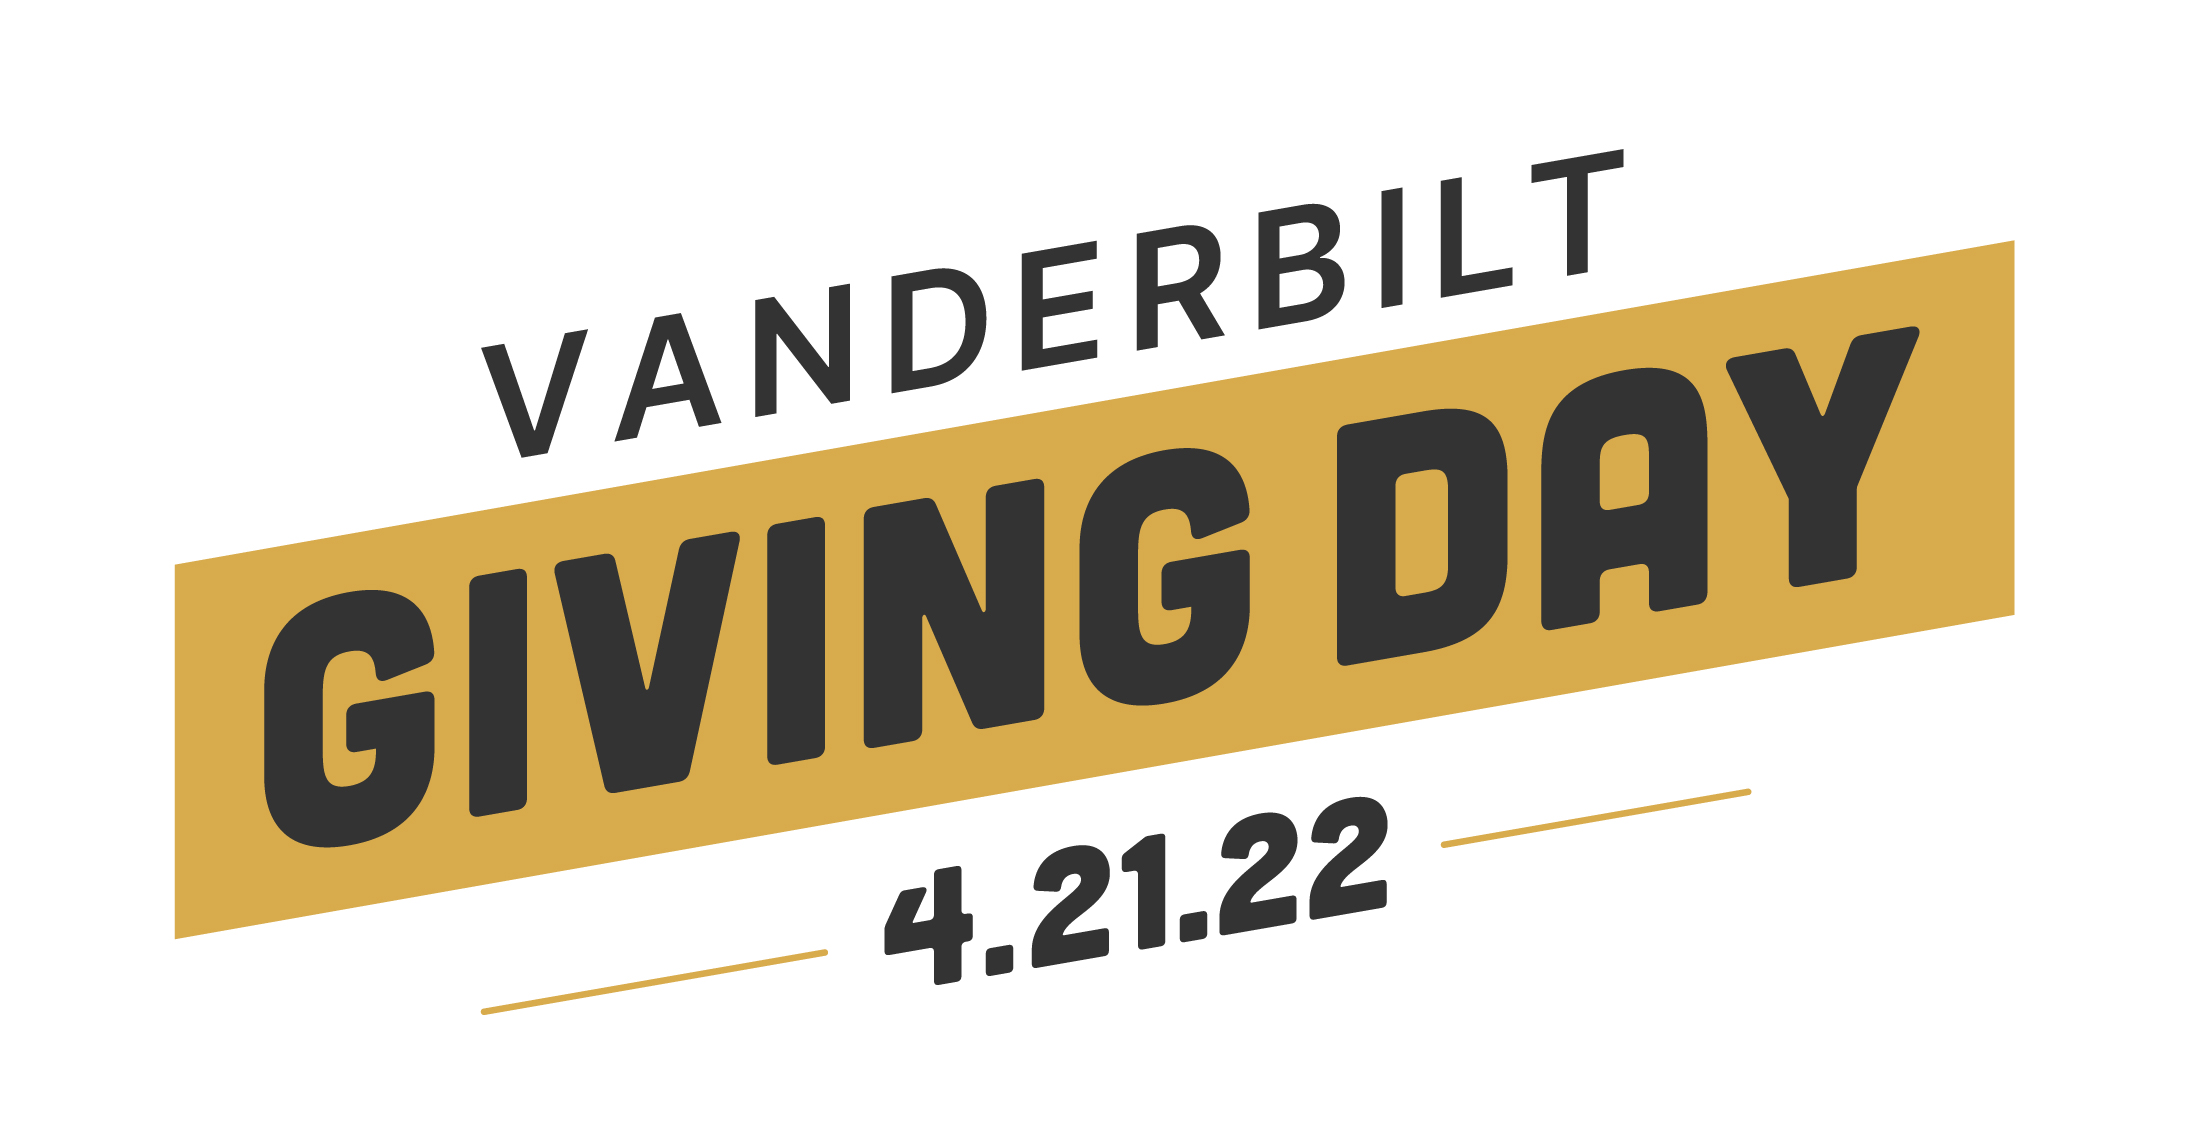 Vanderbilt community stands together for Giving Day 2022